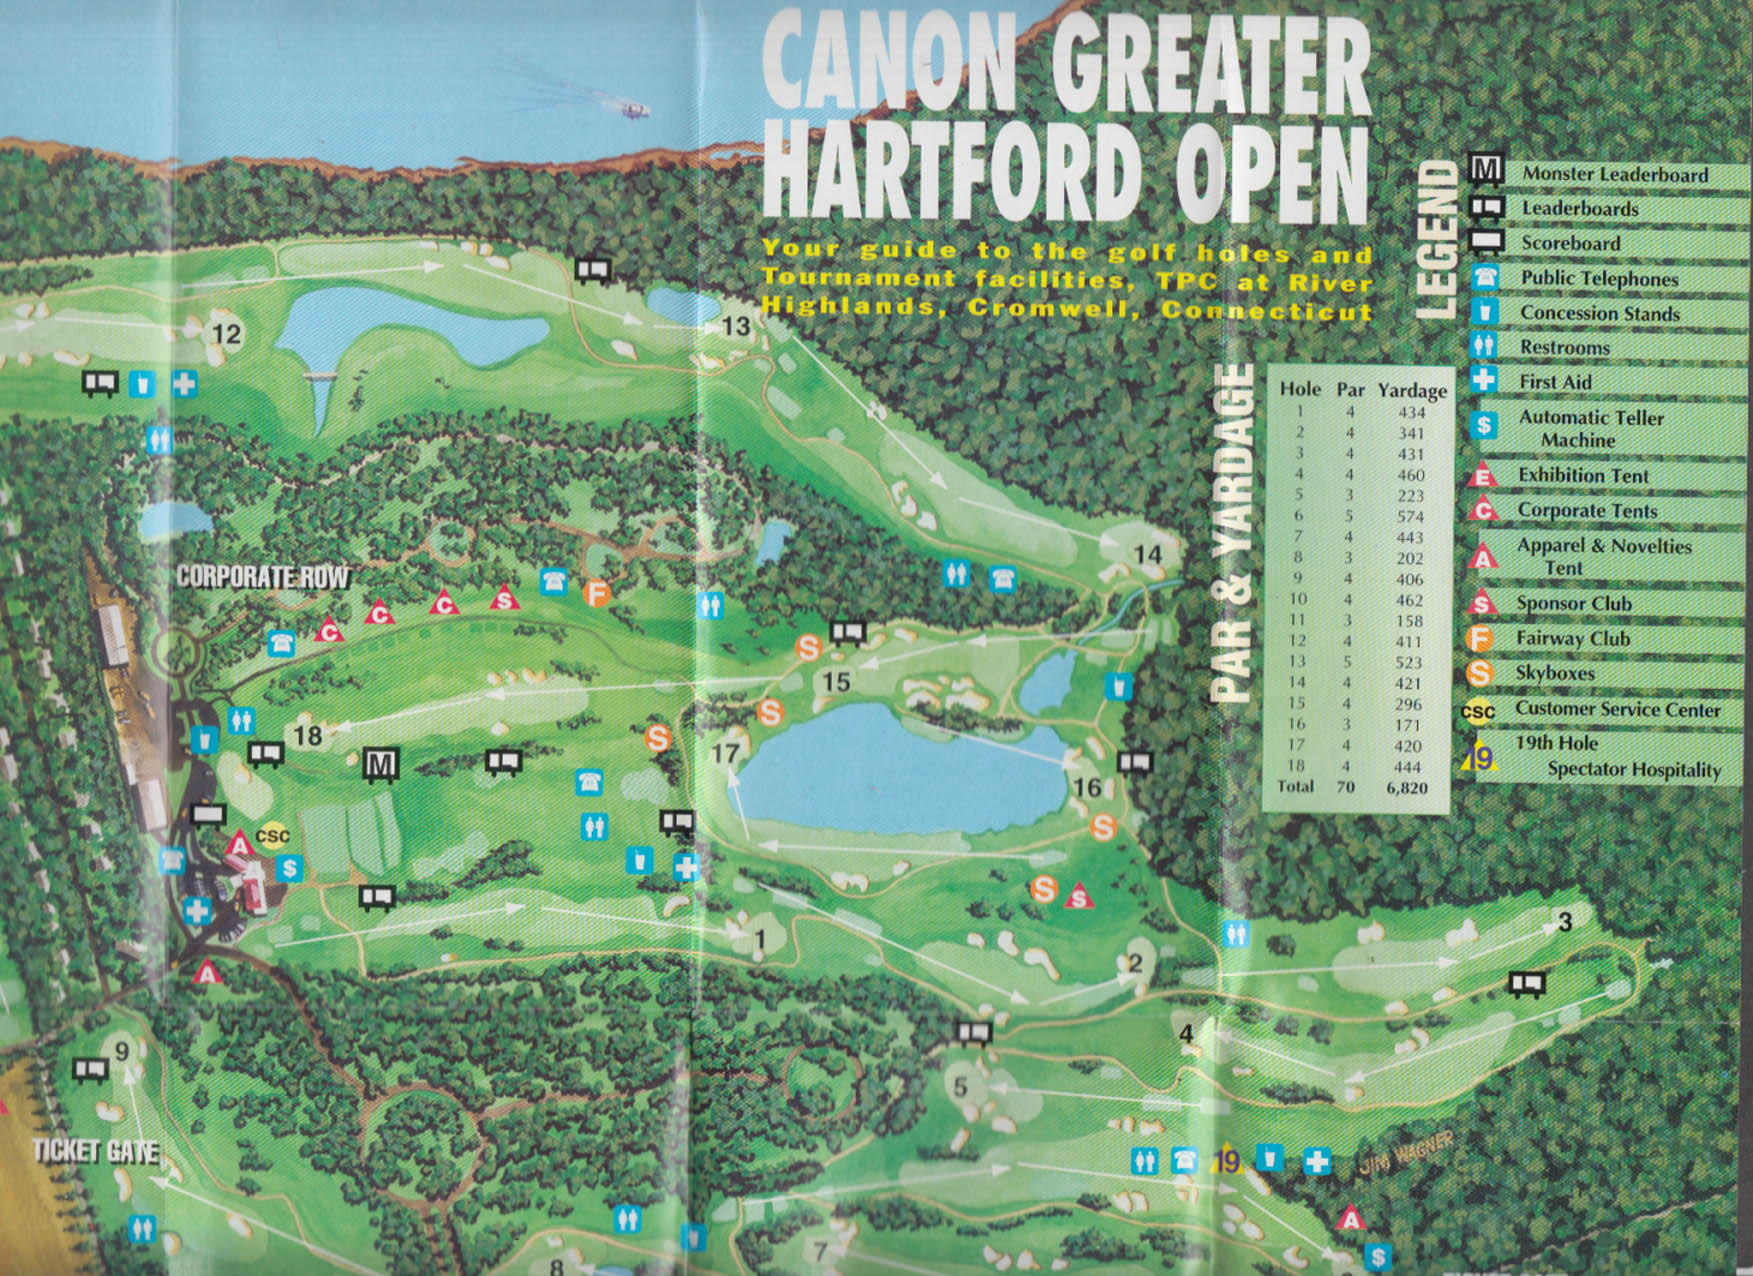 Canon Greater Hartford PGA Open Official Course Map & Guide 1996